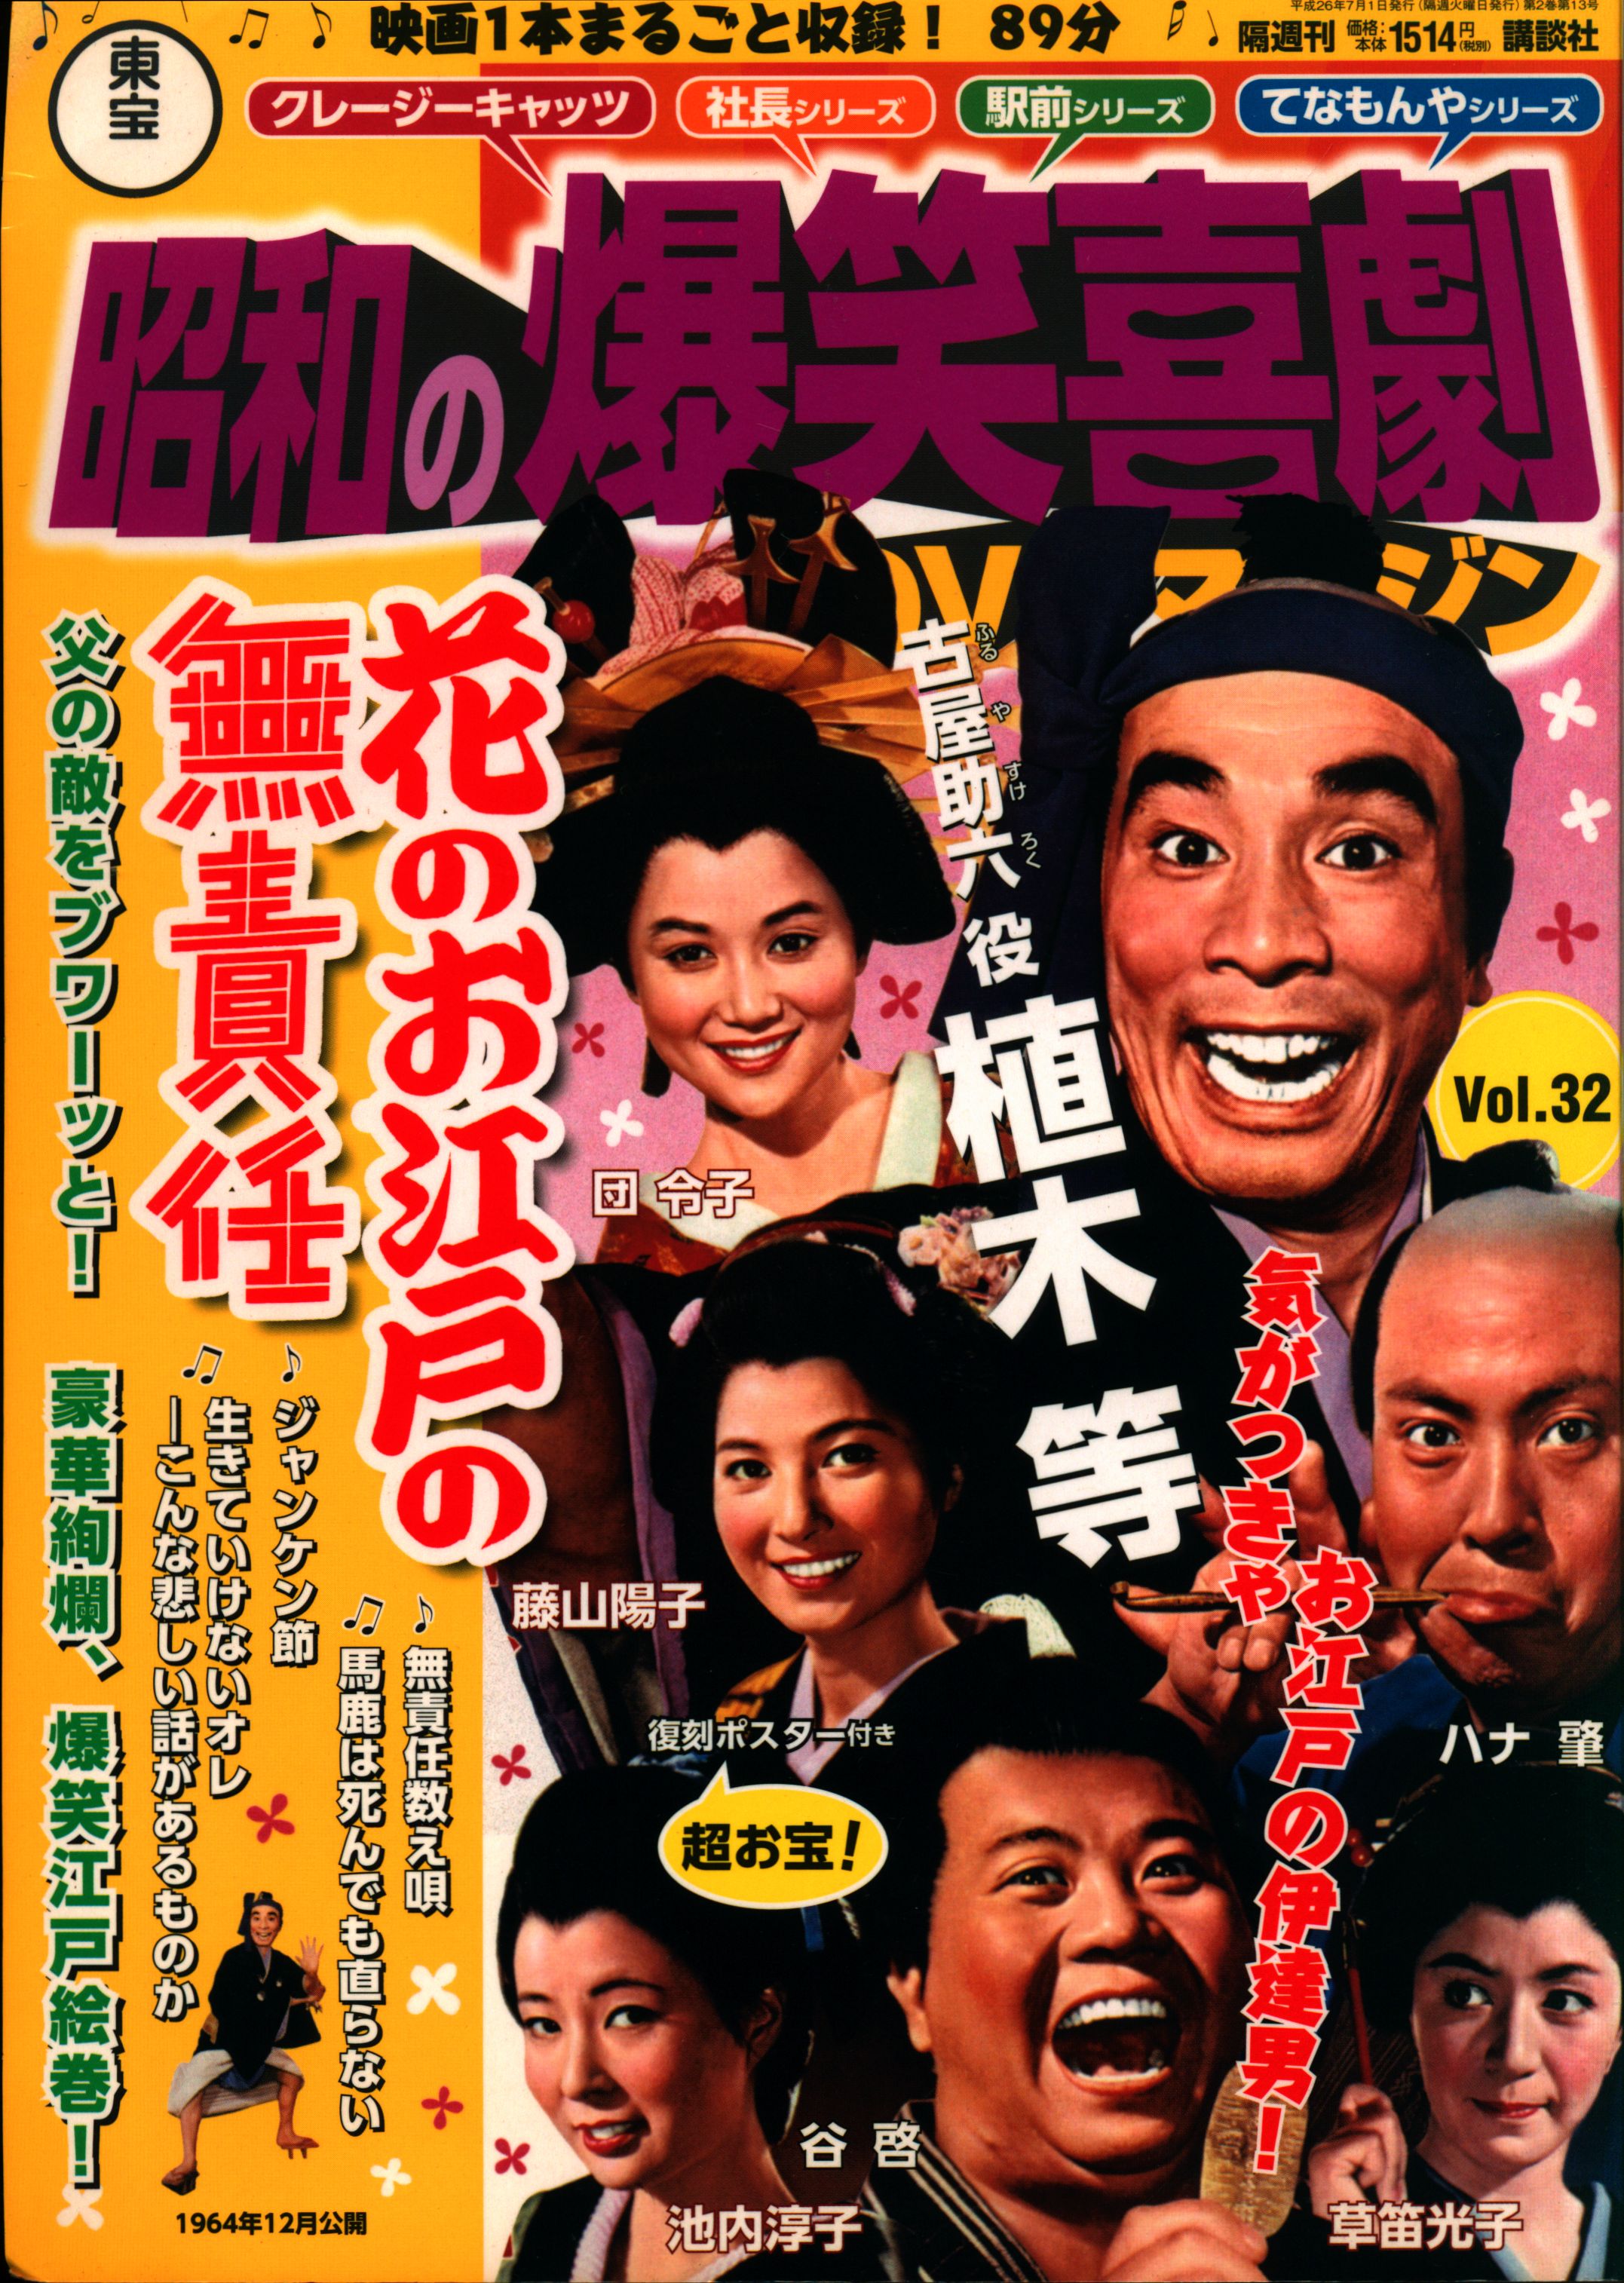 昭和の爆笑喜劇DVDマガジン vol. 28 植木等 クレージーの殴り込み清水 